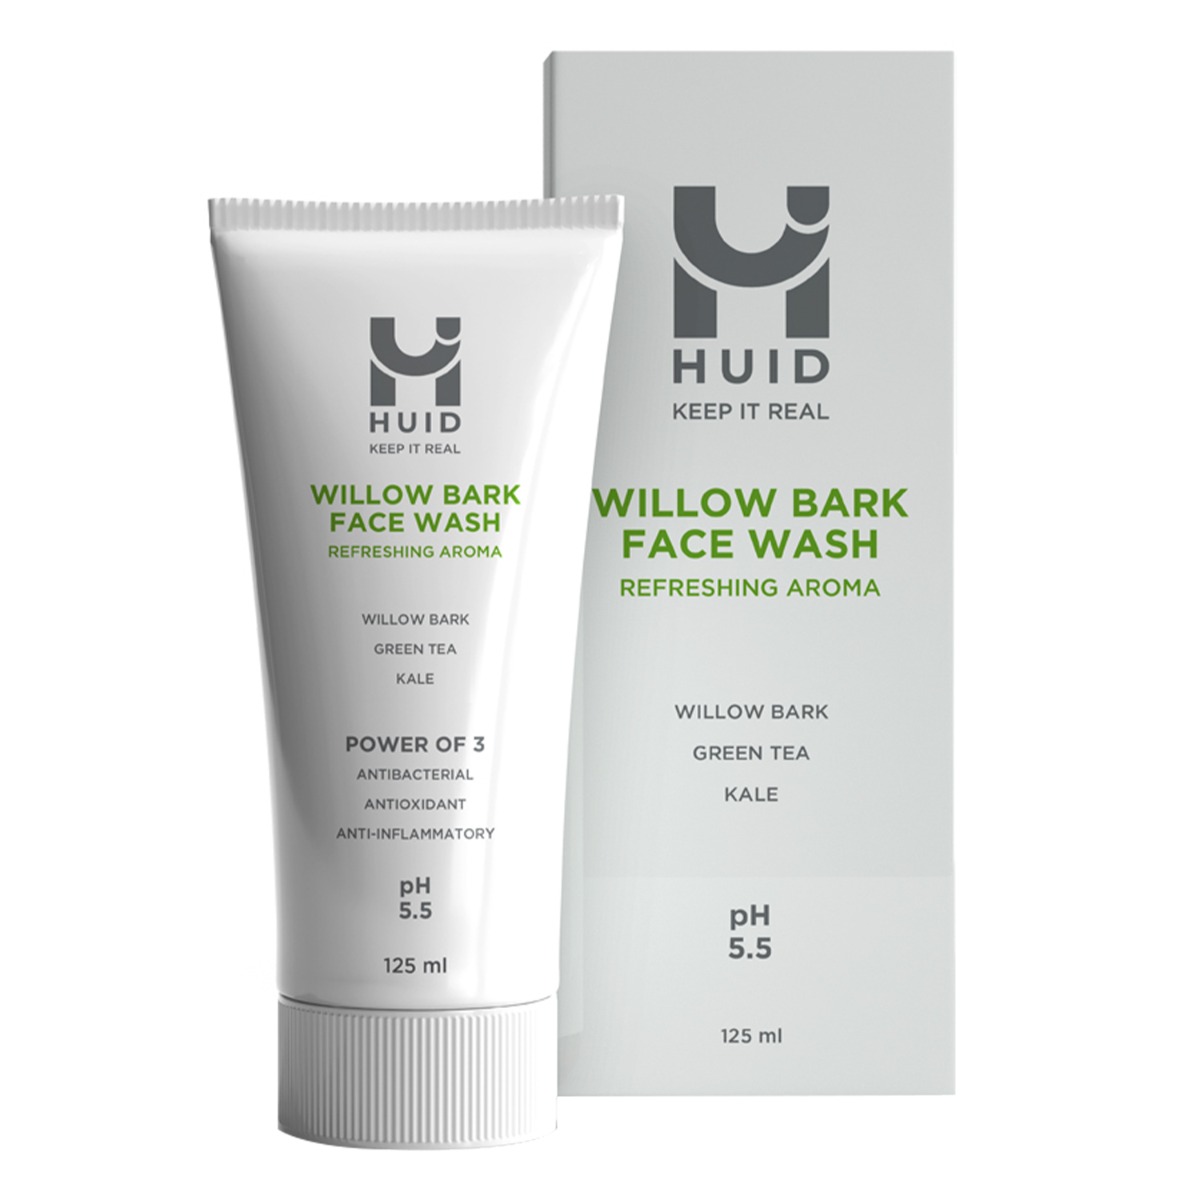 HUID Willow Bark Face Wash, 125ml